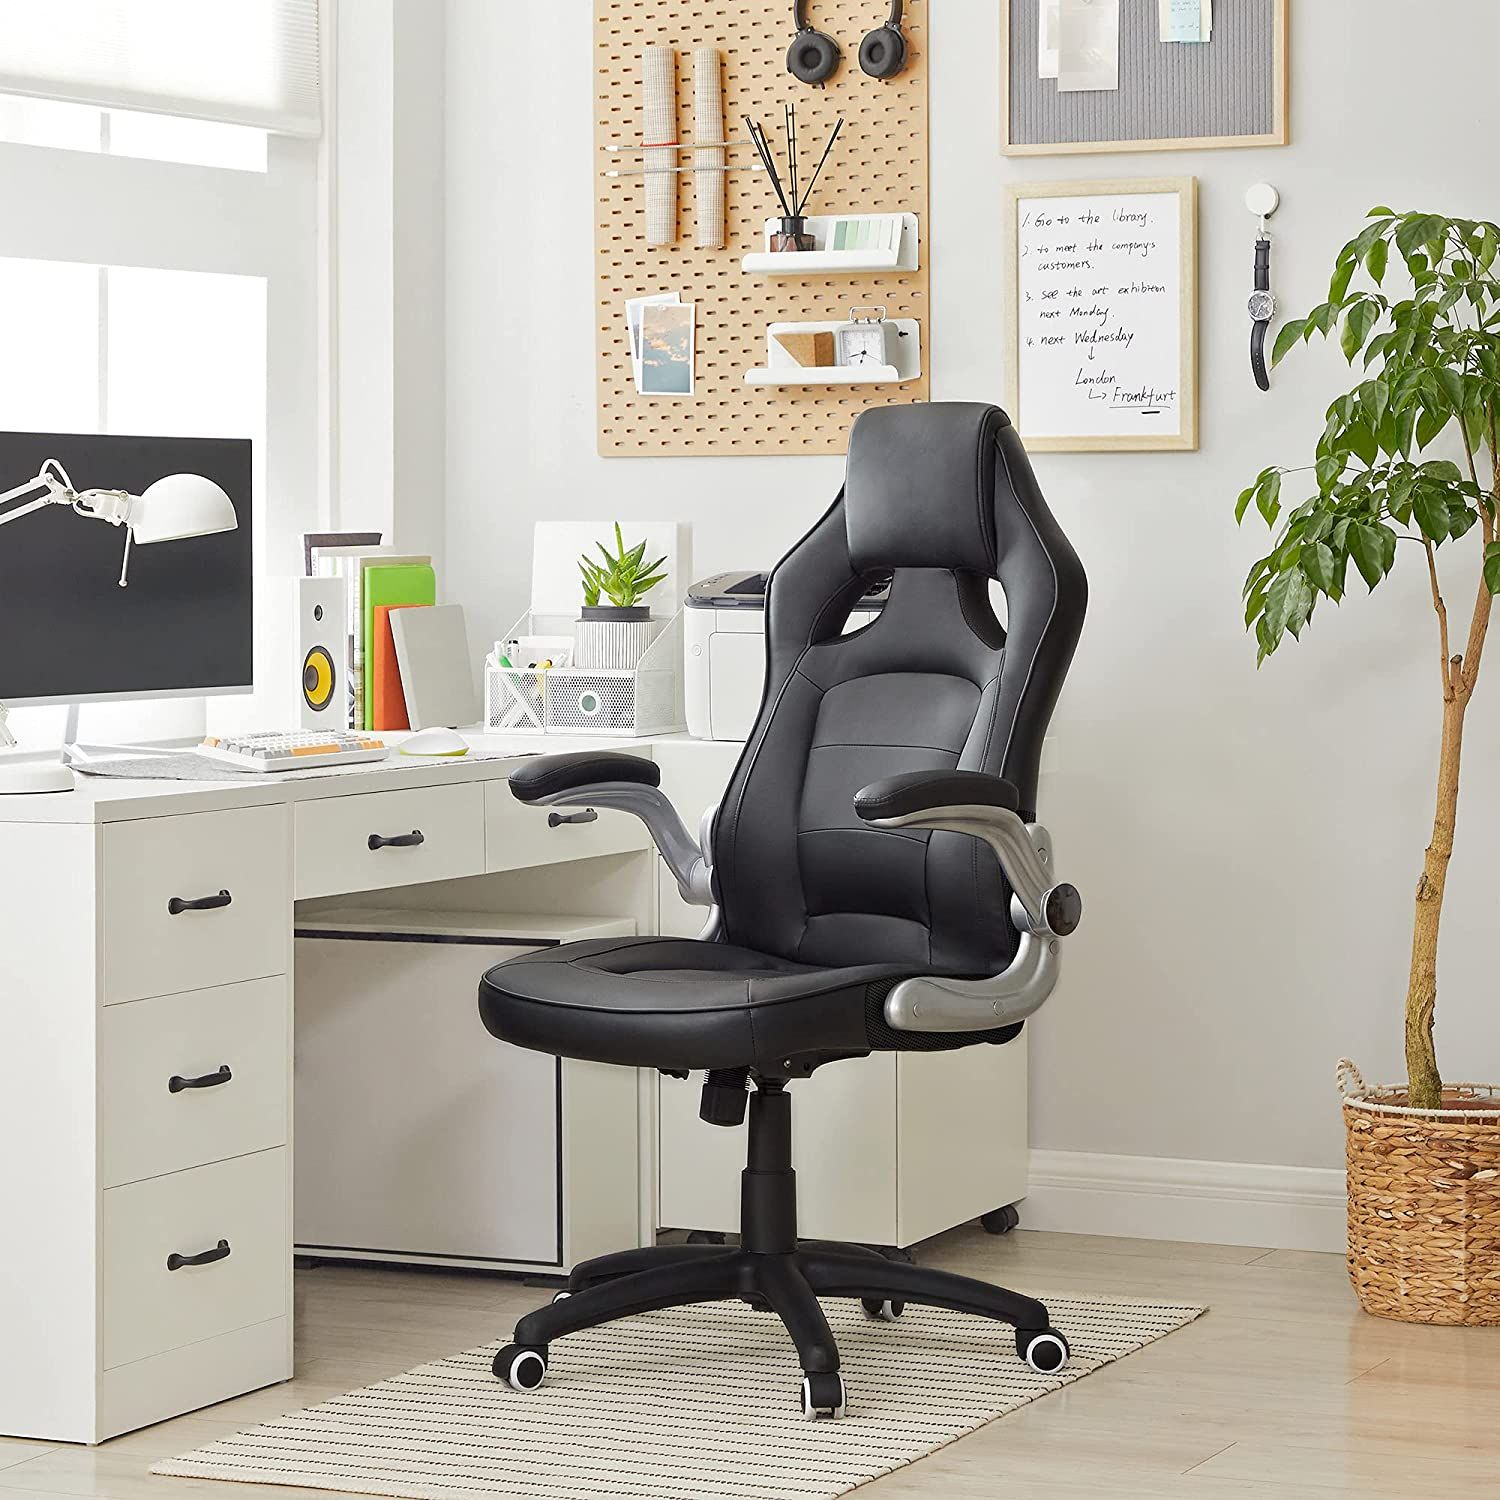 Consejos para elegir la mejor silla de trabajo para tu casa